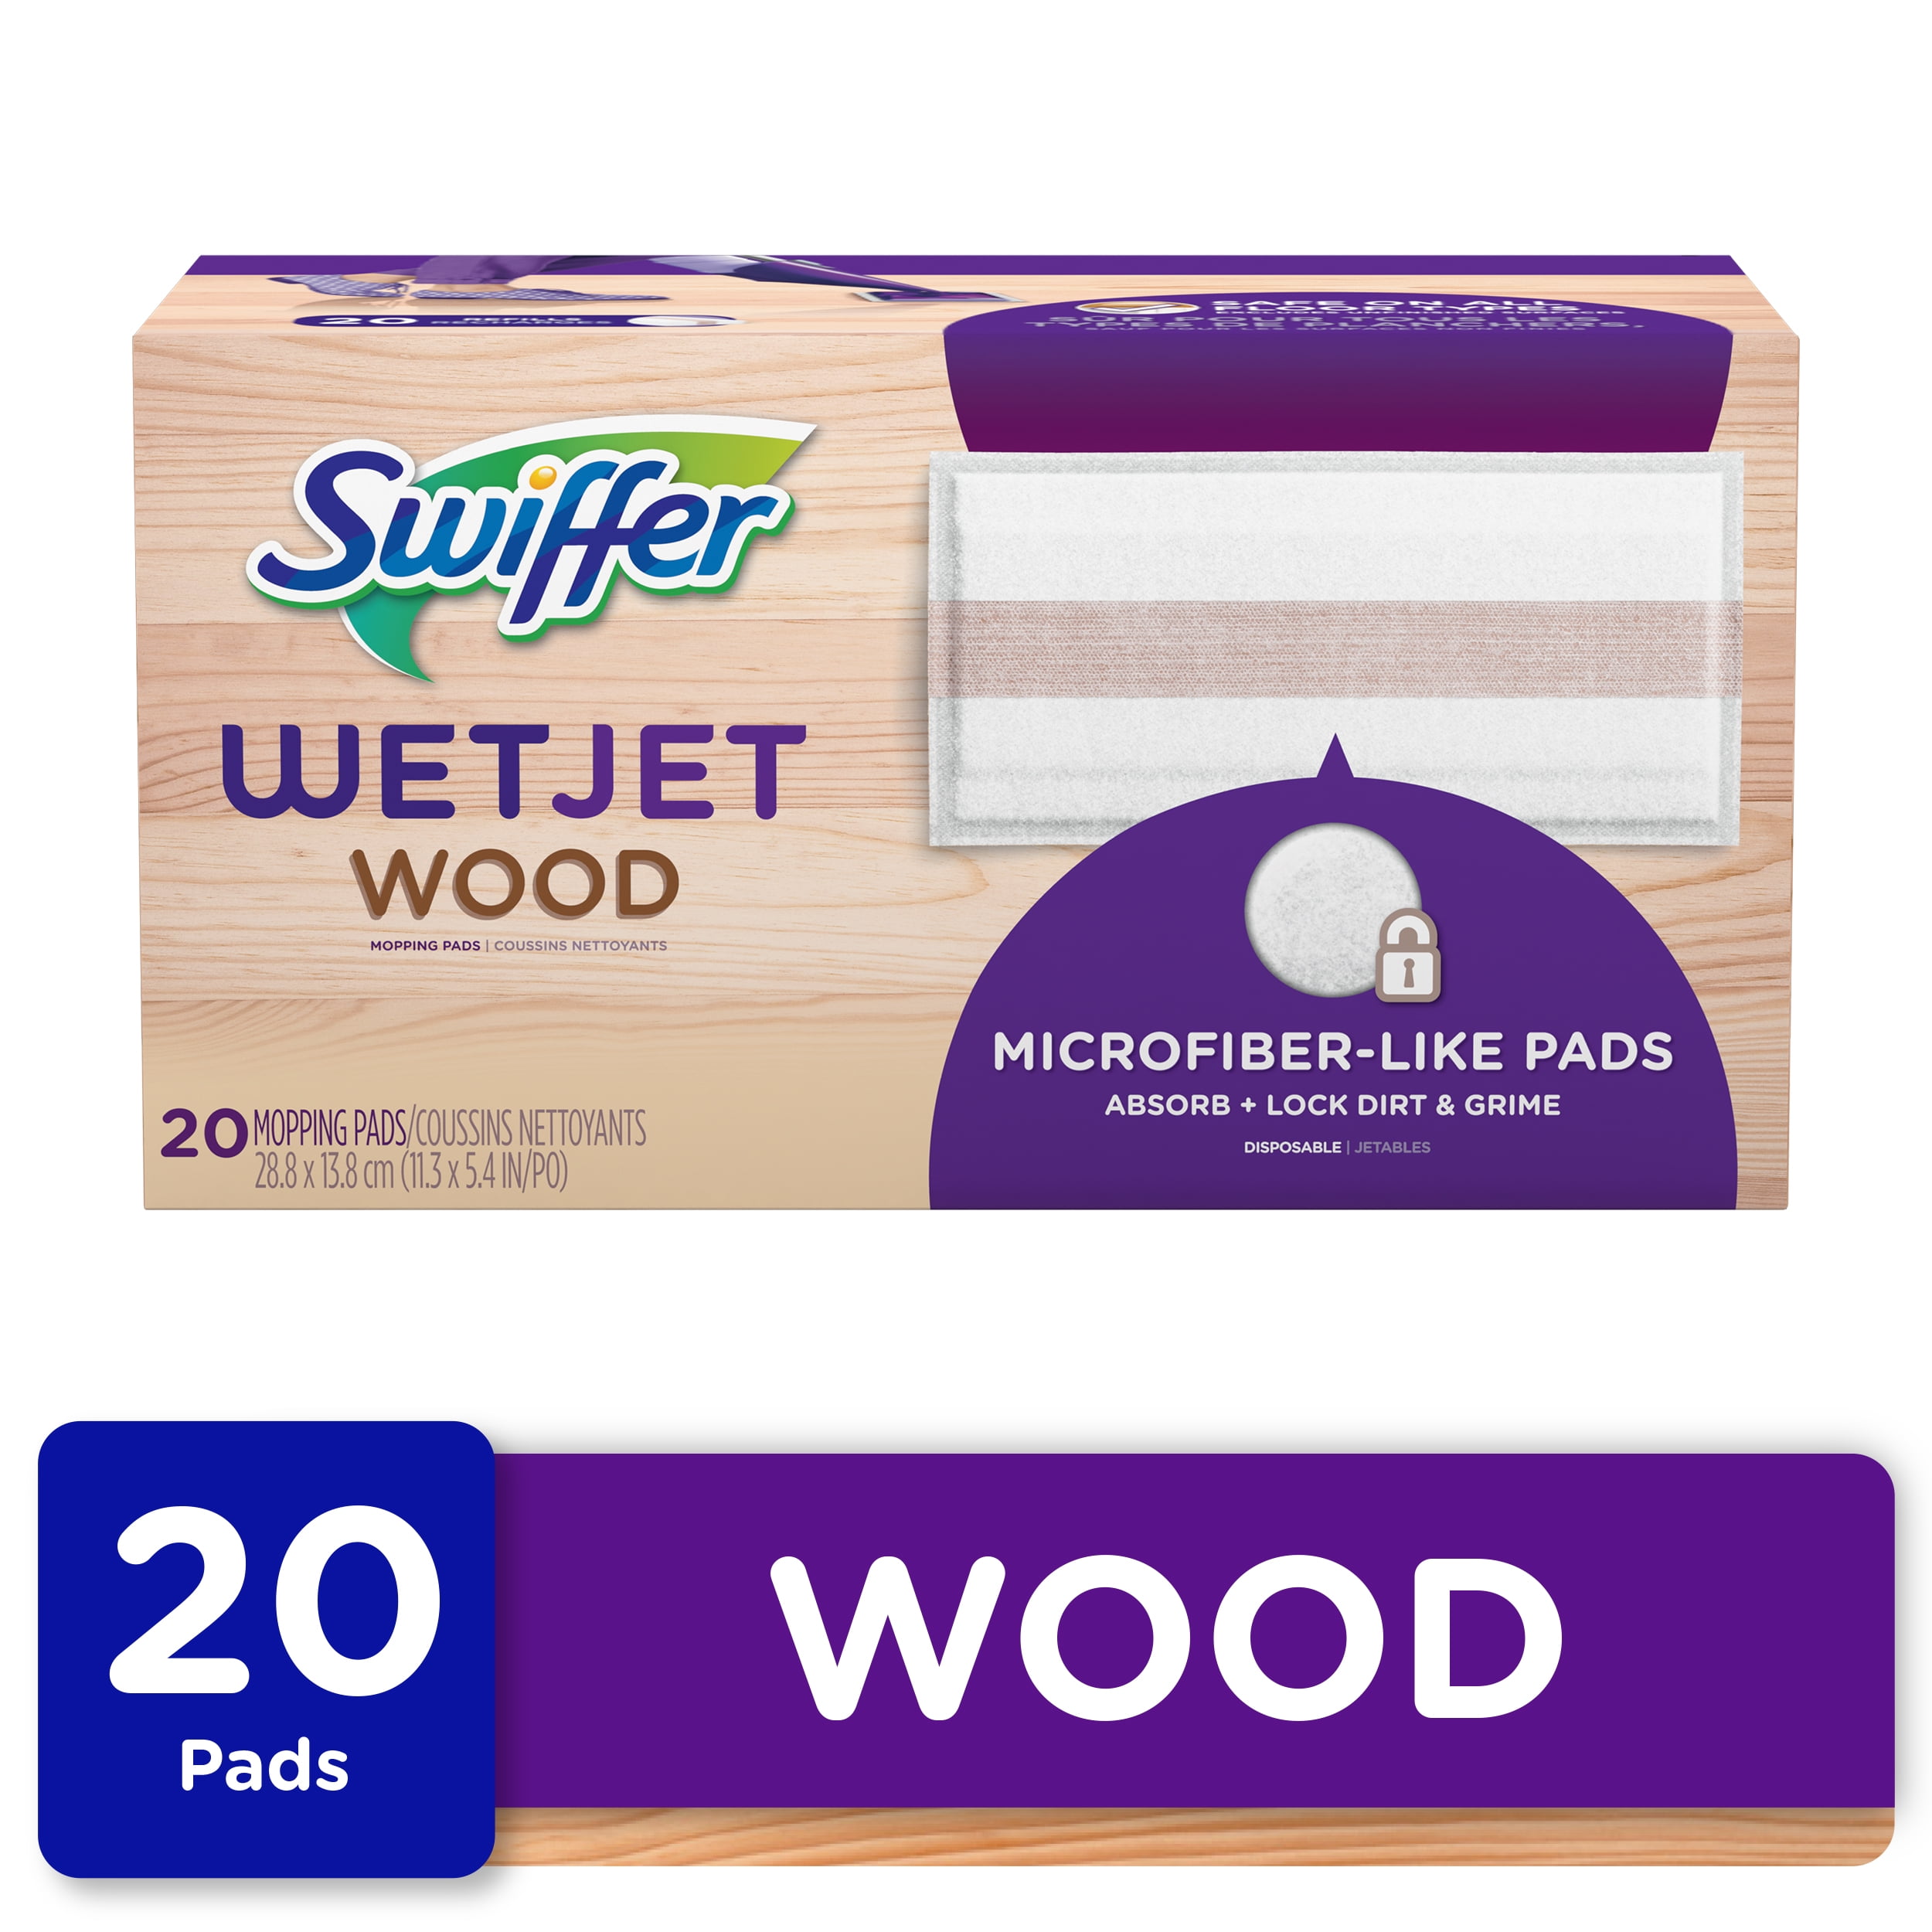 Swiffer Wetjet Wood Mop Pad Refill 12, Swiffer Wetjet On Hardwood Floors Reviews